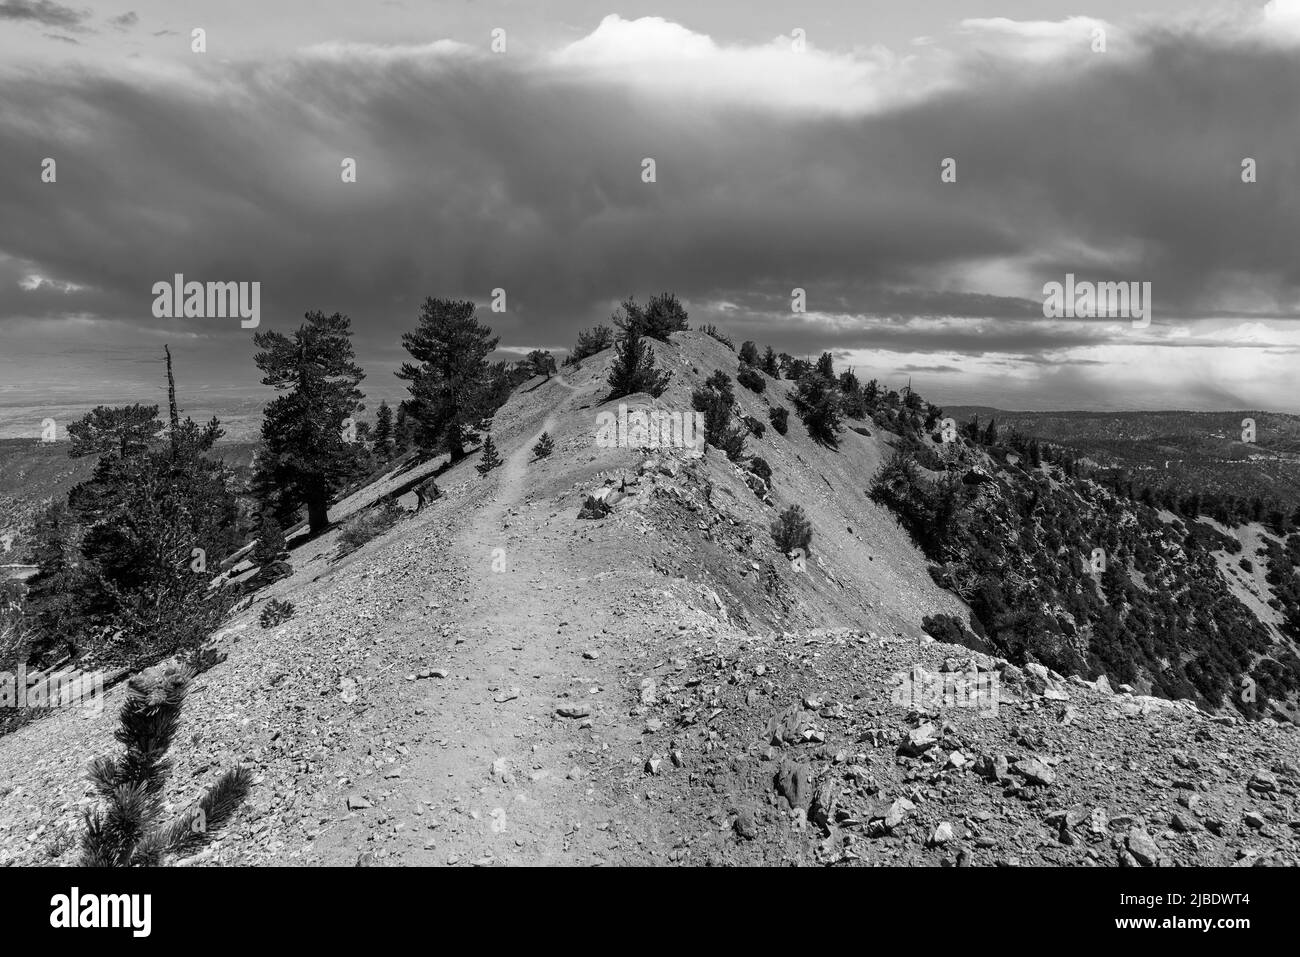 Vista en blanco y negro de las nubes de tormentas de verano a lo largo de la ruta Pacific Crest cerca del Monte Baden-Powell en las montañas de San Gabriel en el condado de Los Ángeles. Foto de stock